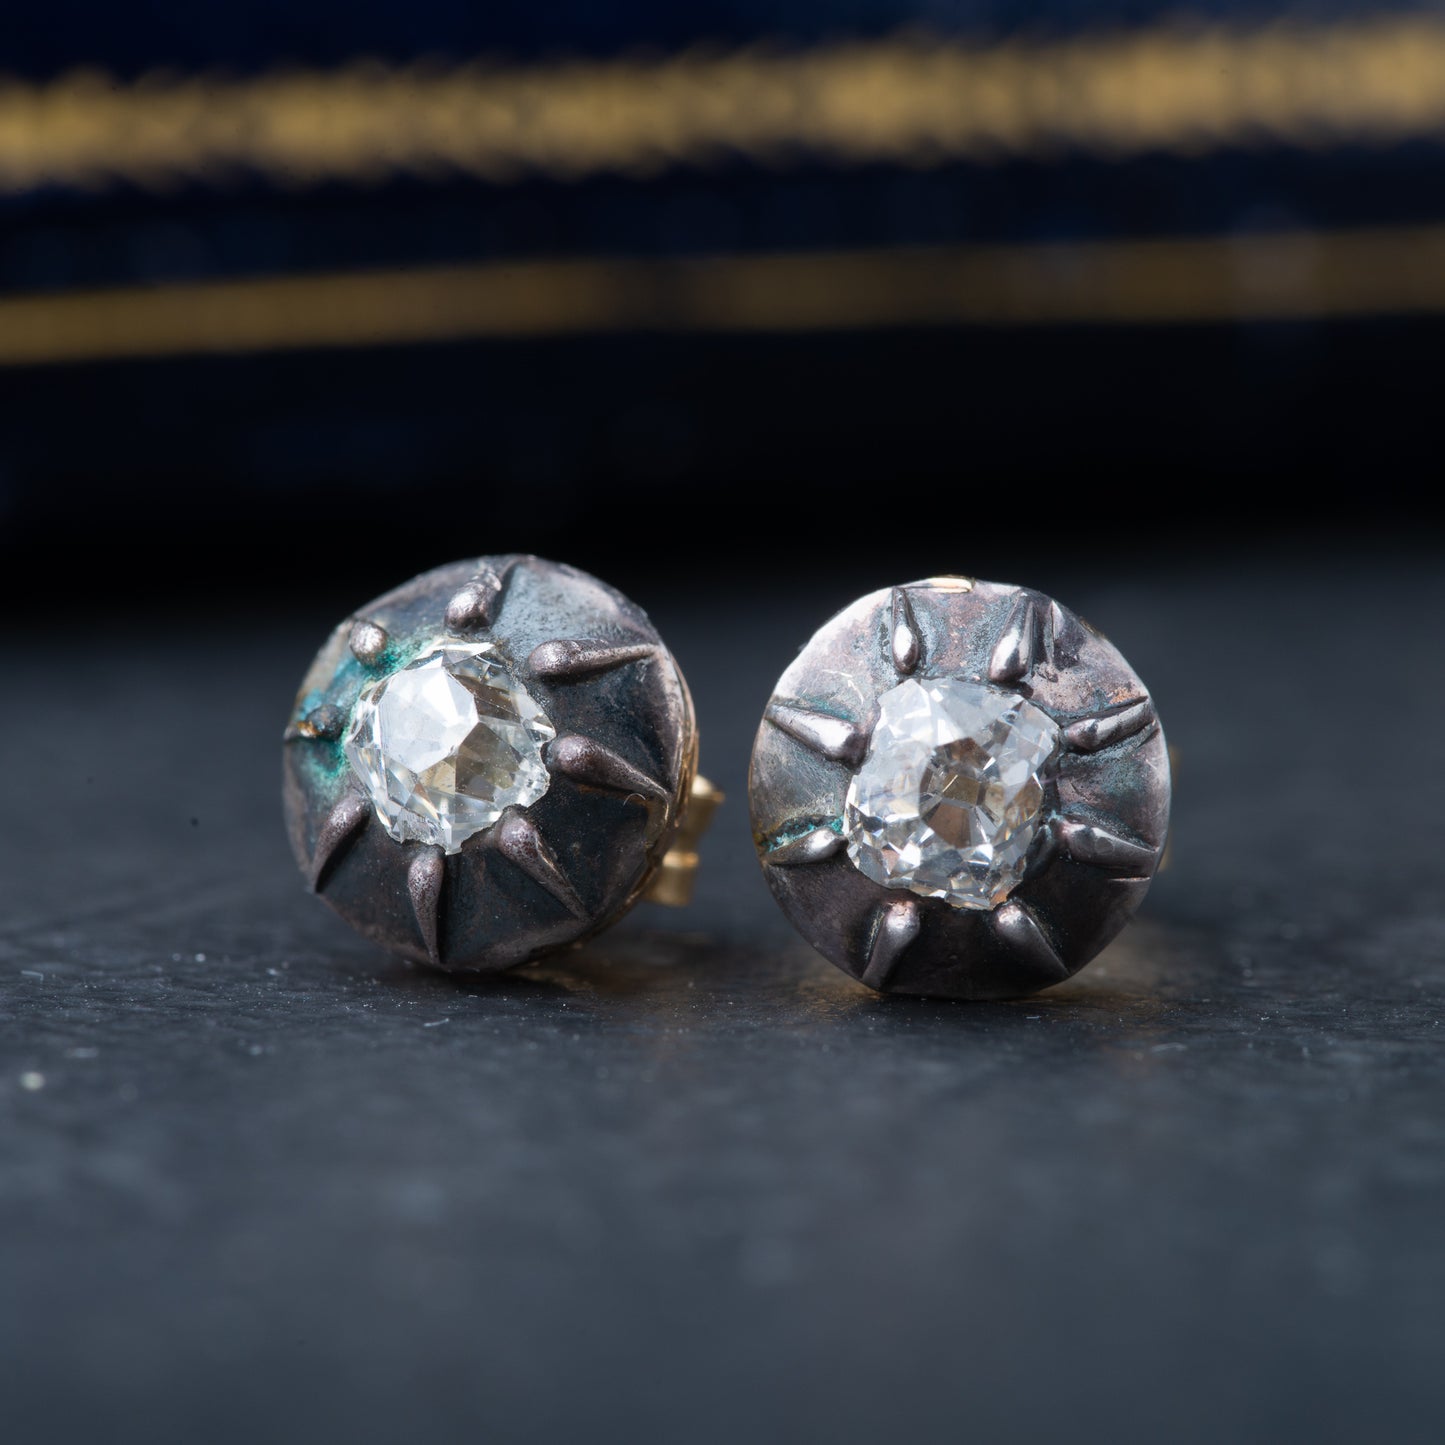 Antique old mine cut diamond earrings